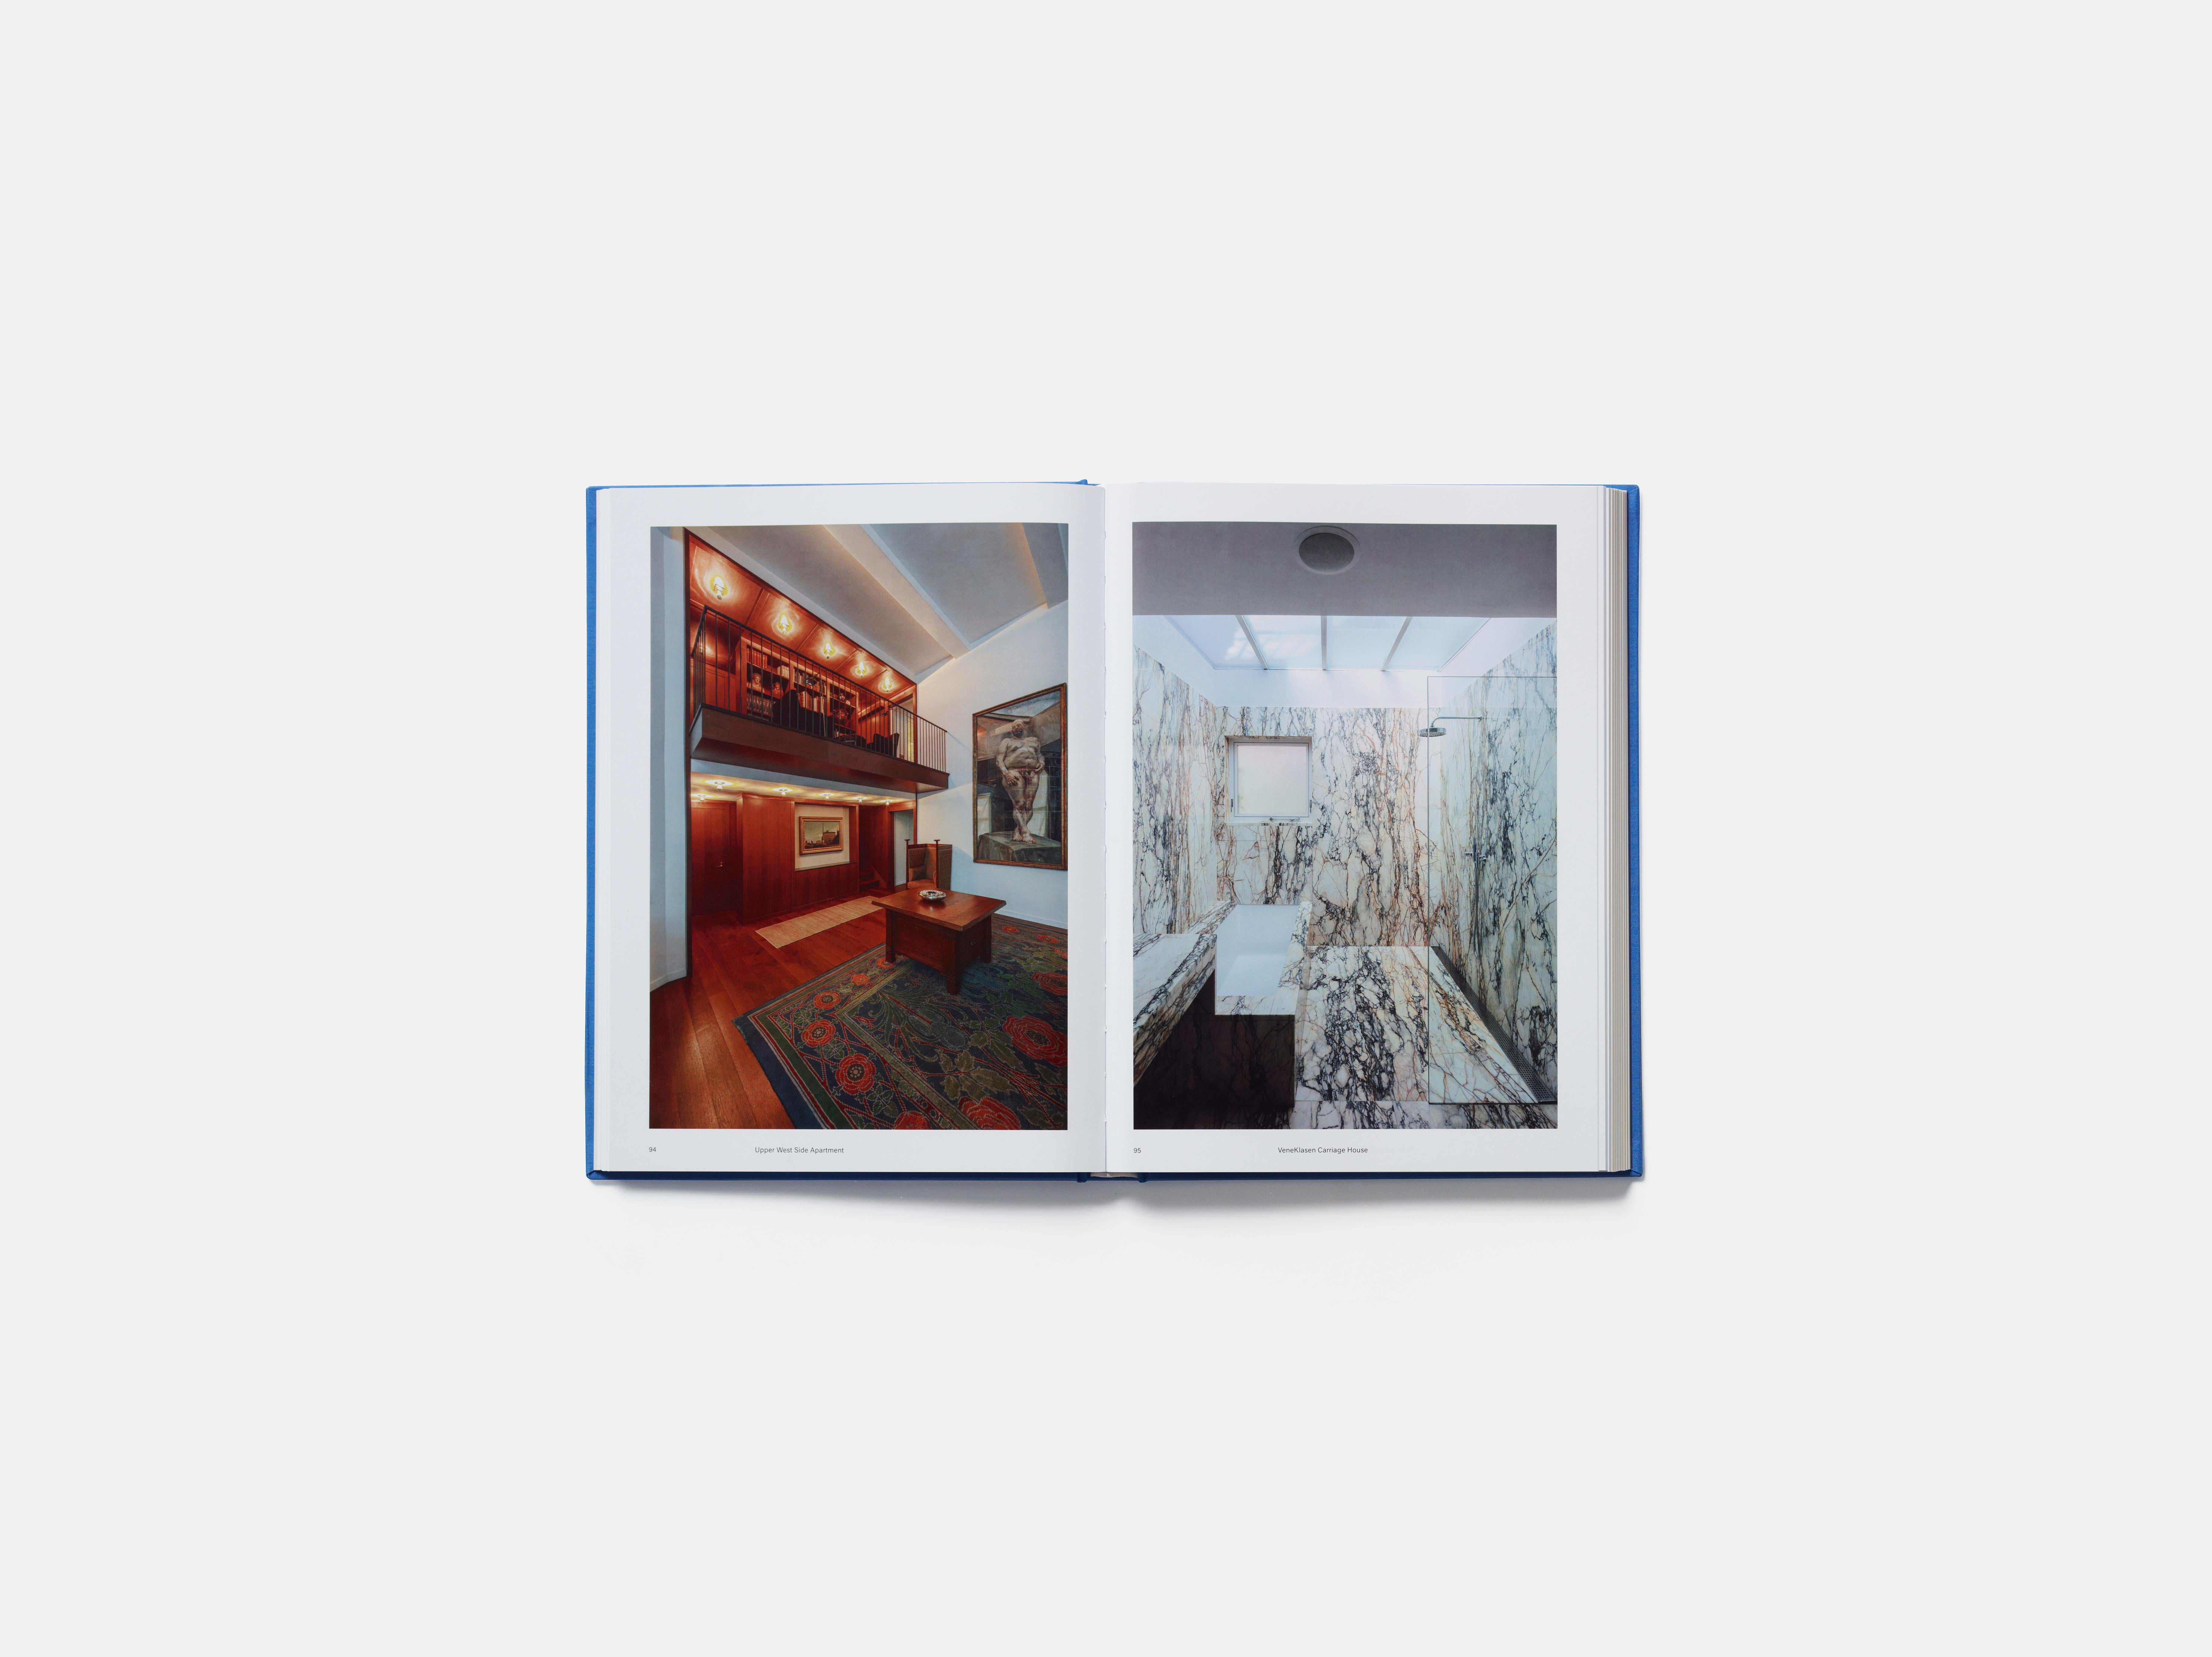 Ein umfassendes Buch über Selldorf Architects mit einem detaillierten Blick auf die Museen, Wohnhäuser und öffentlichen Gebäude, die das Büro in den Vereinigten Staaten und im Ausland entworfen hat.

Die Gründungsdirektorin Annabelle Selldorf wurde